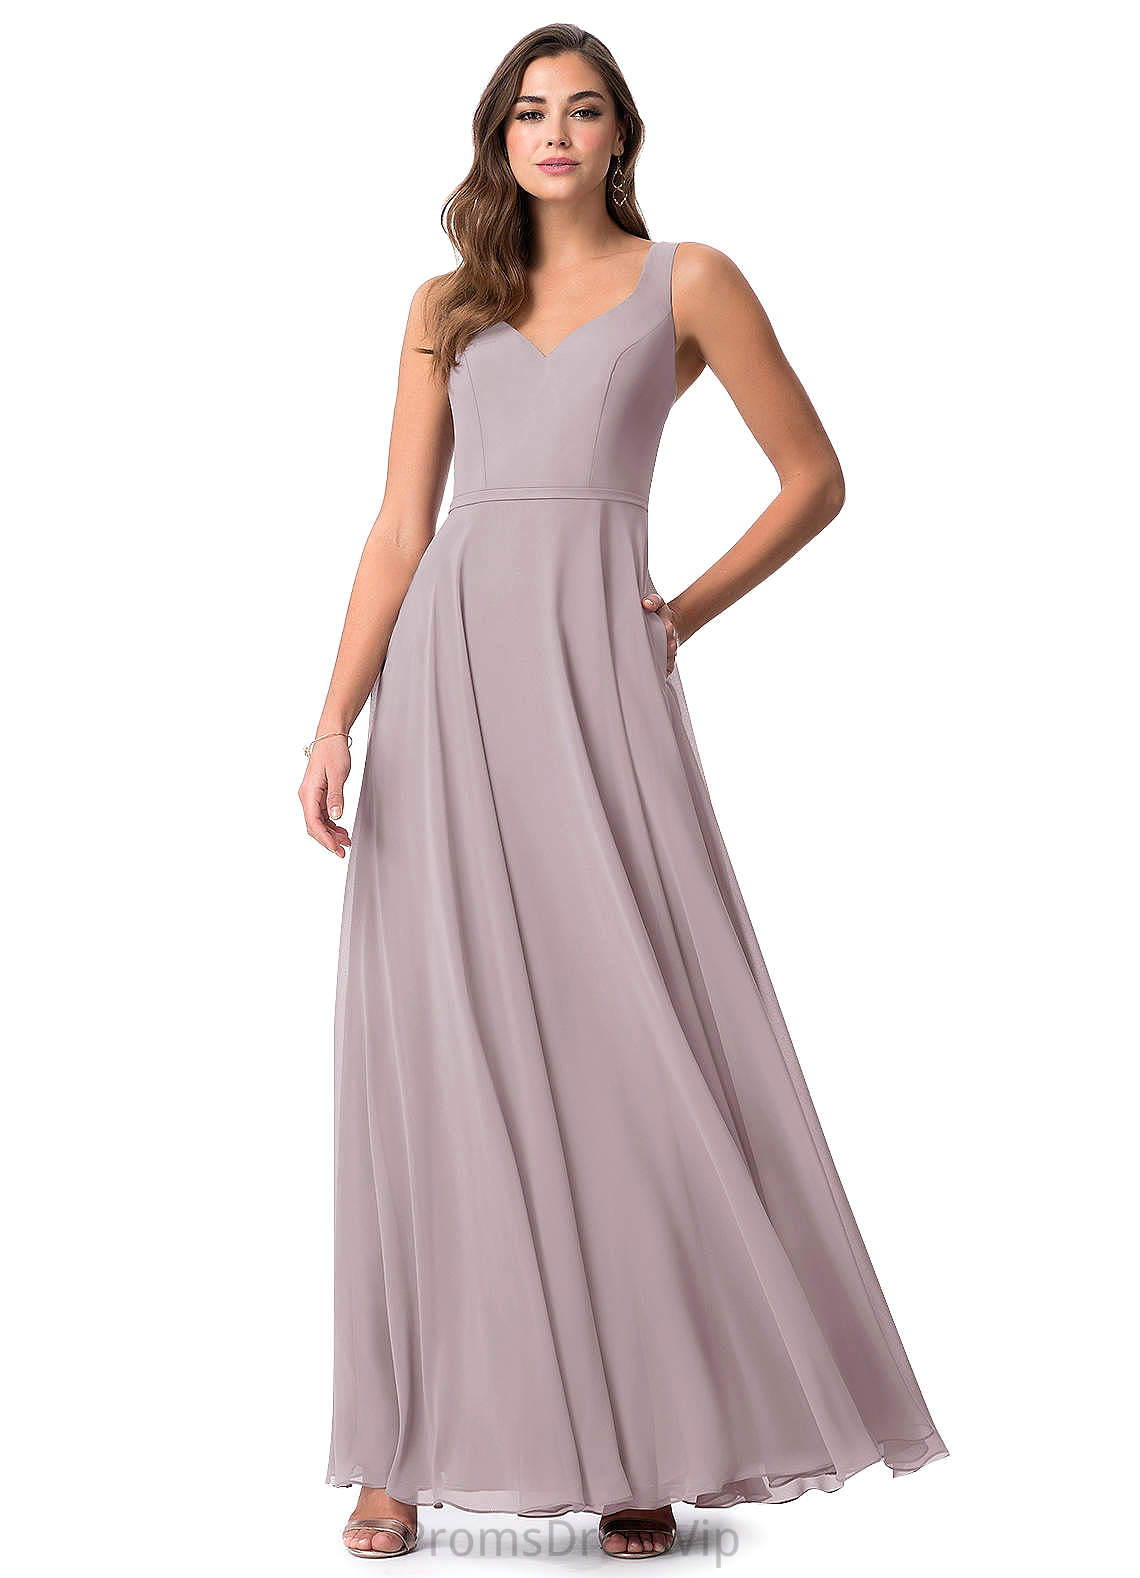 Sofia A-Line/Princess V-Neck Natural Waist Floor Length Bridesmaid Dresses